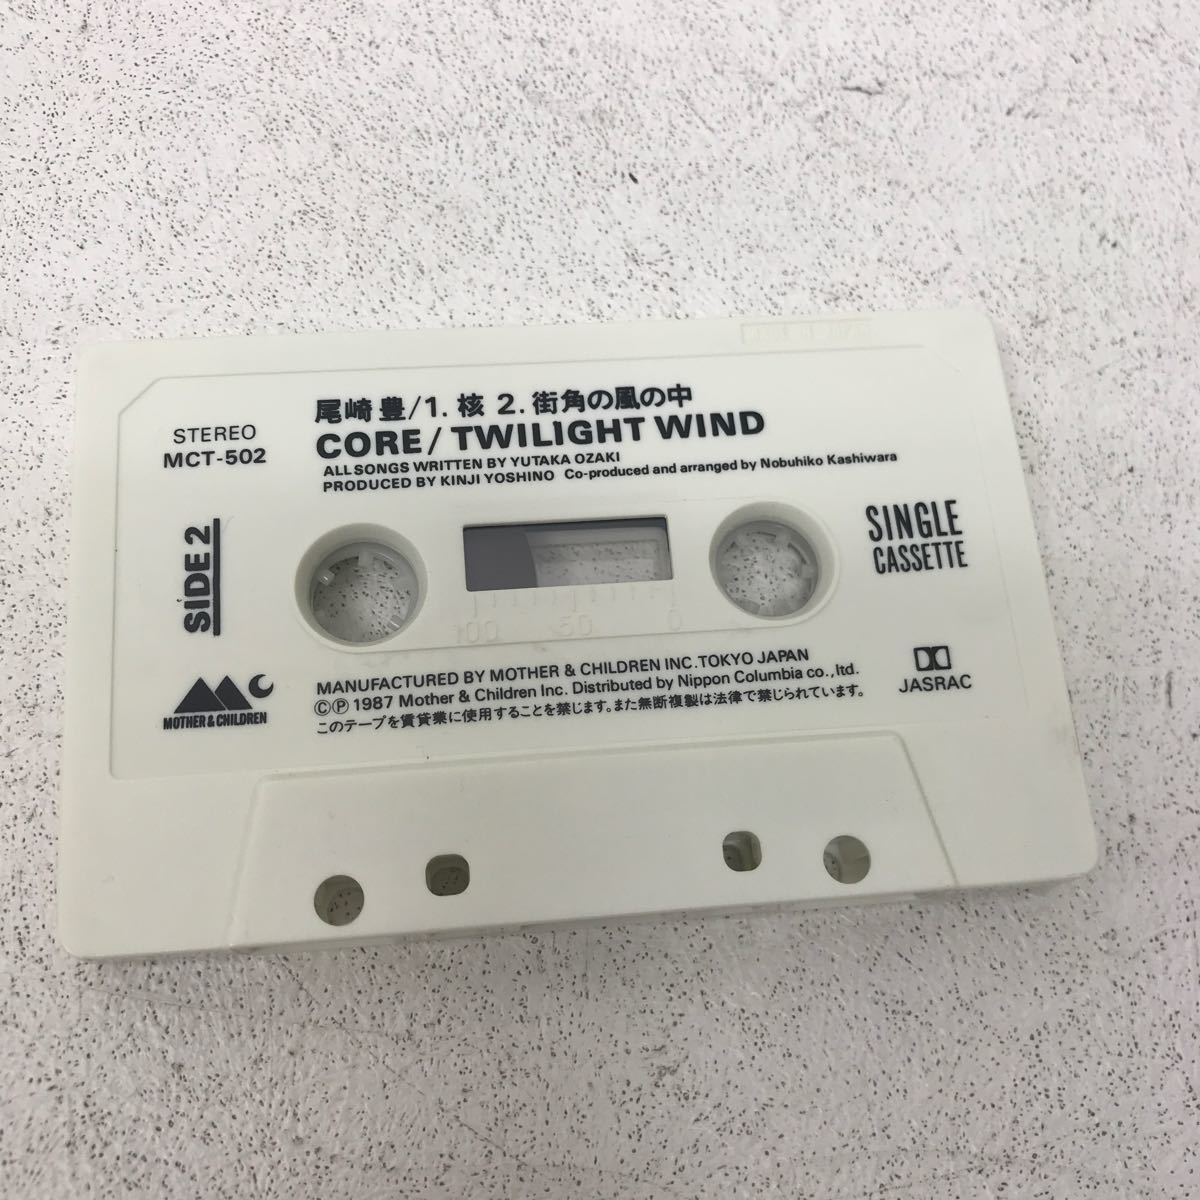 I1130A3 尾崎豊 太陽の破片 遠い空 / 核 CORE 街角の風の中 カセットテープ シングルカセット 2巻セット 音楽 邦楽 SINGLE CASSETTE_画像8